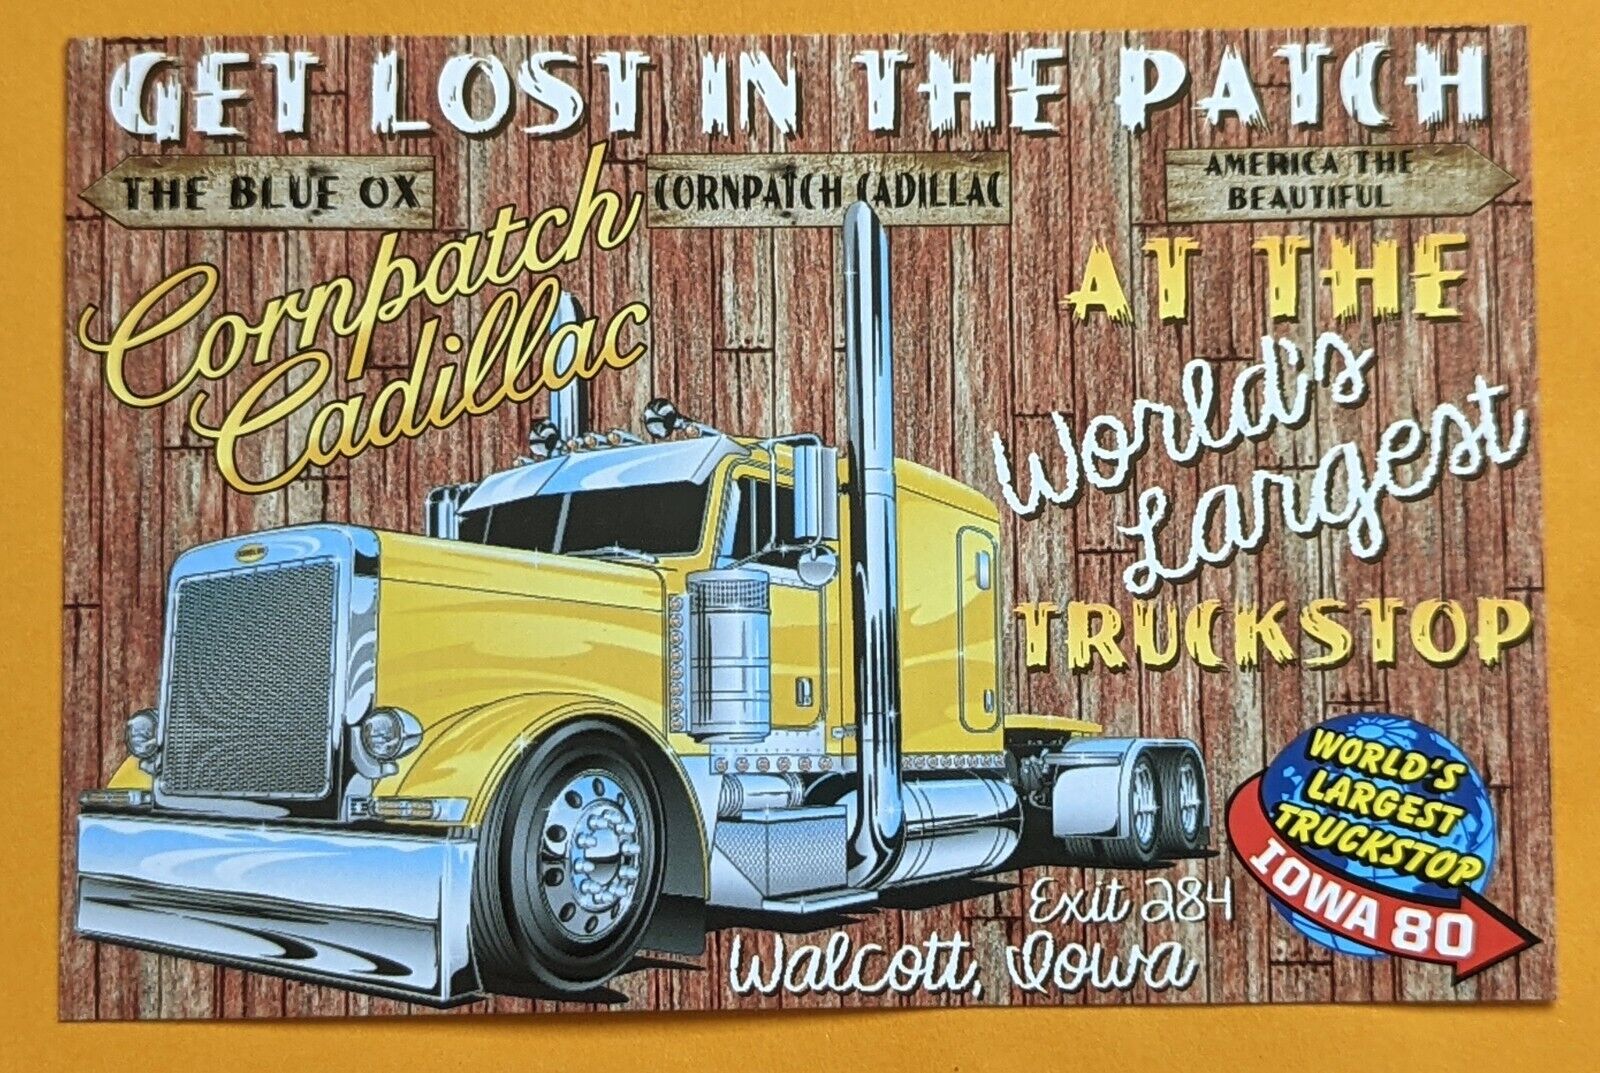 Postcard IA: Greetings from World's Largest Truckstop Iowa-80. Walcott. Iowa